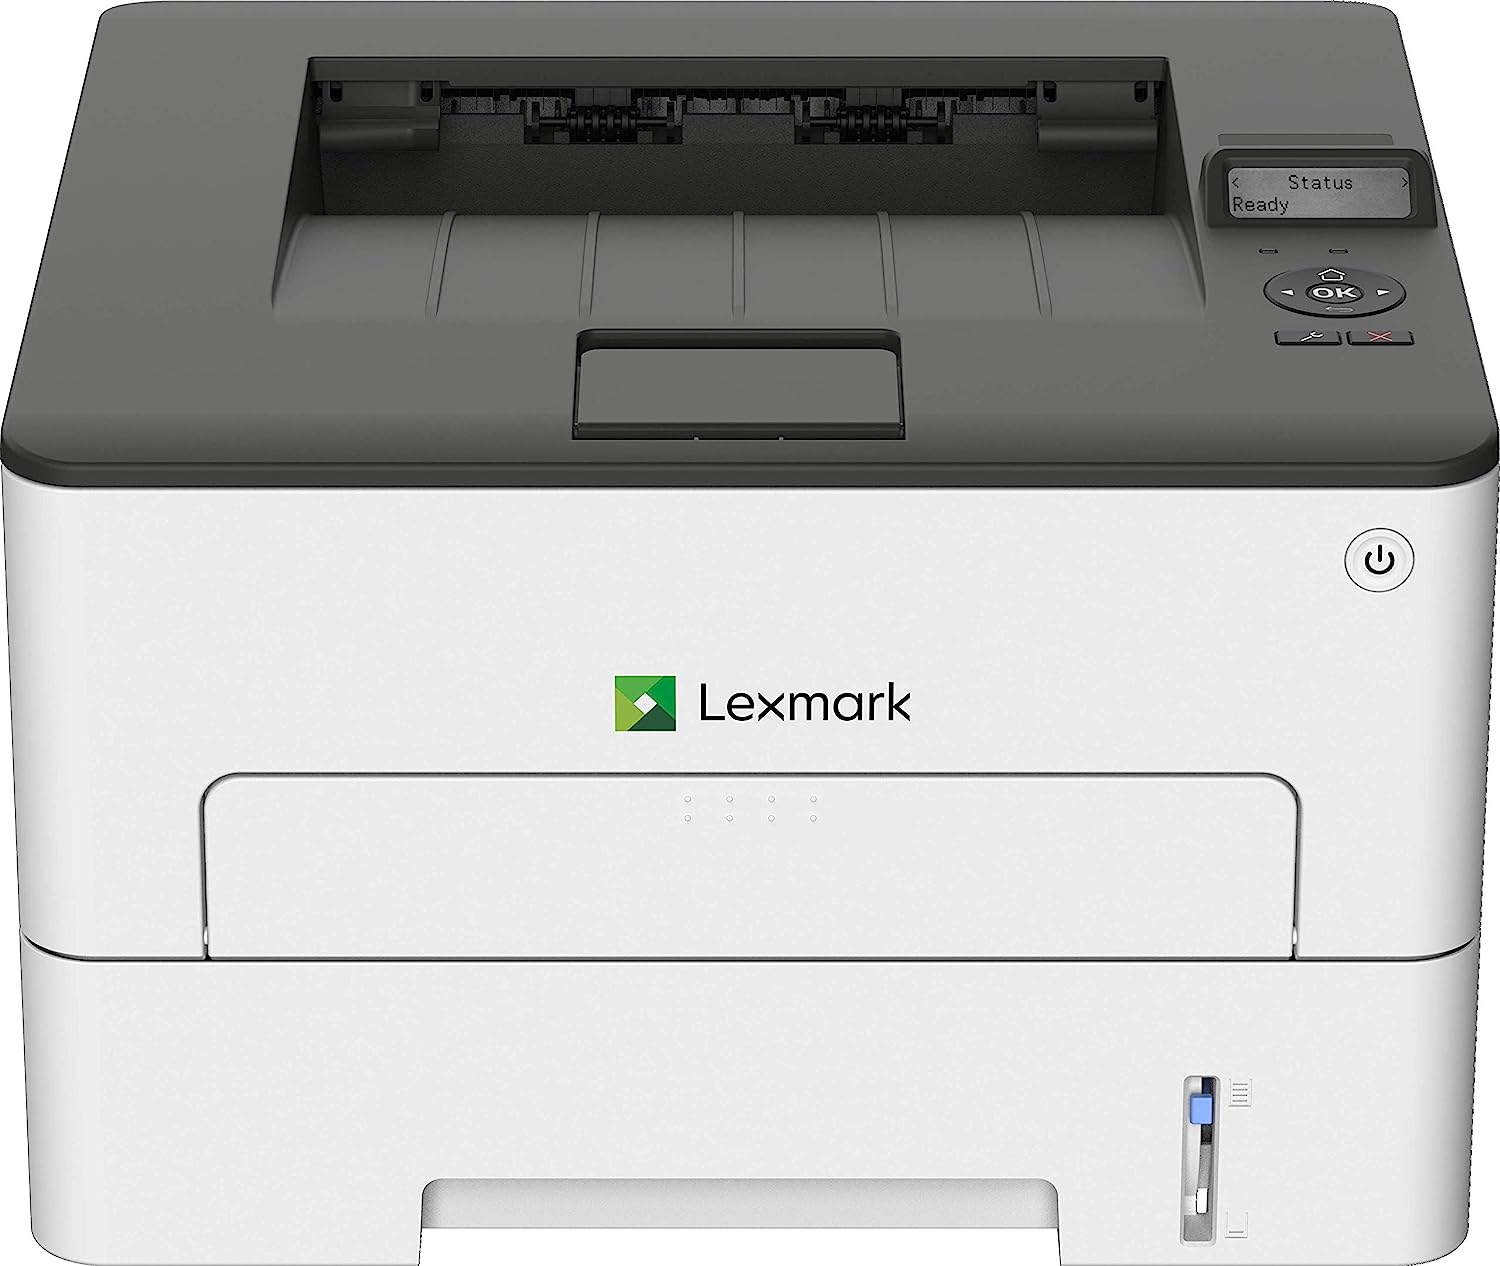 Lexmark B2236dw Black and White Laser Printer, [...]